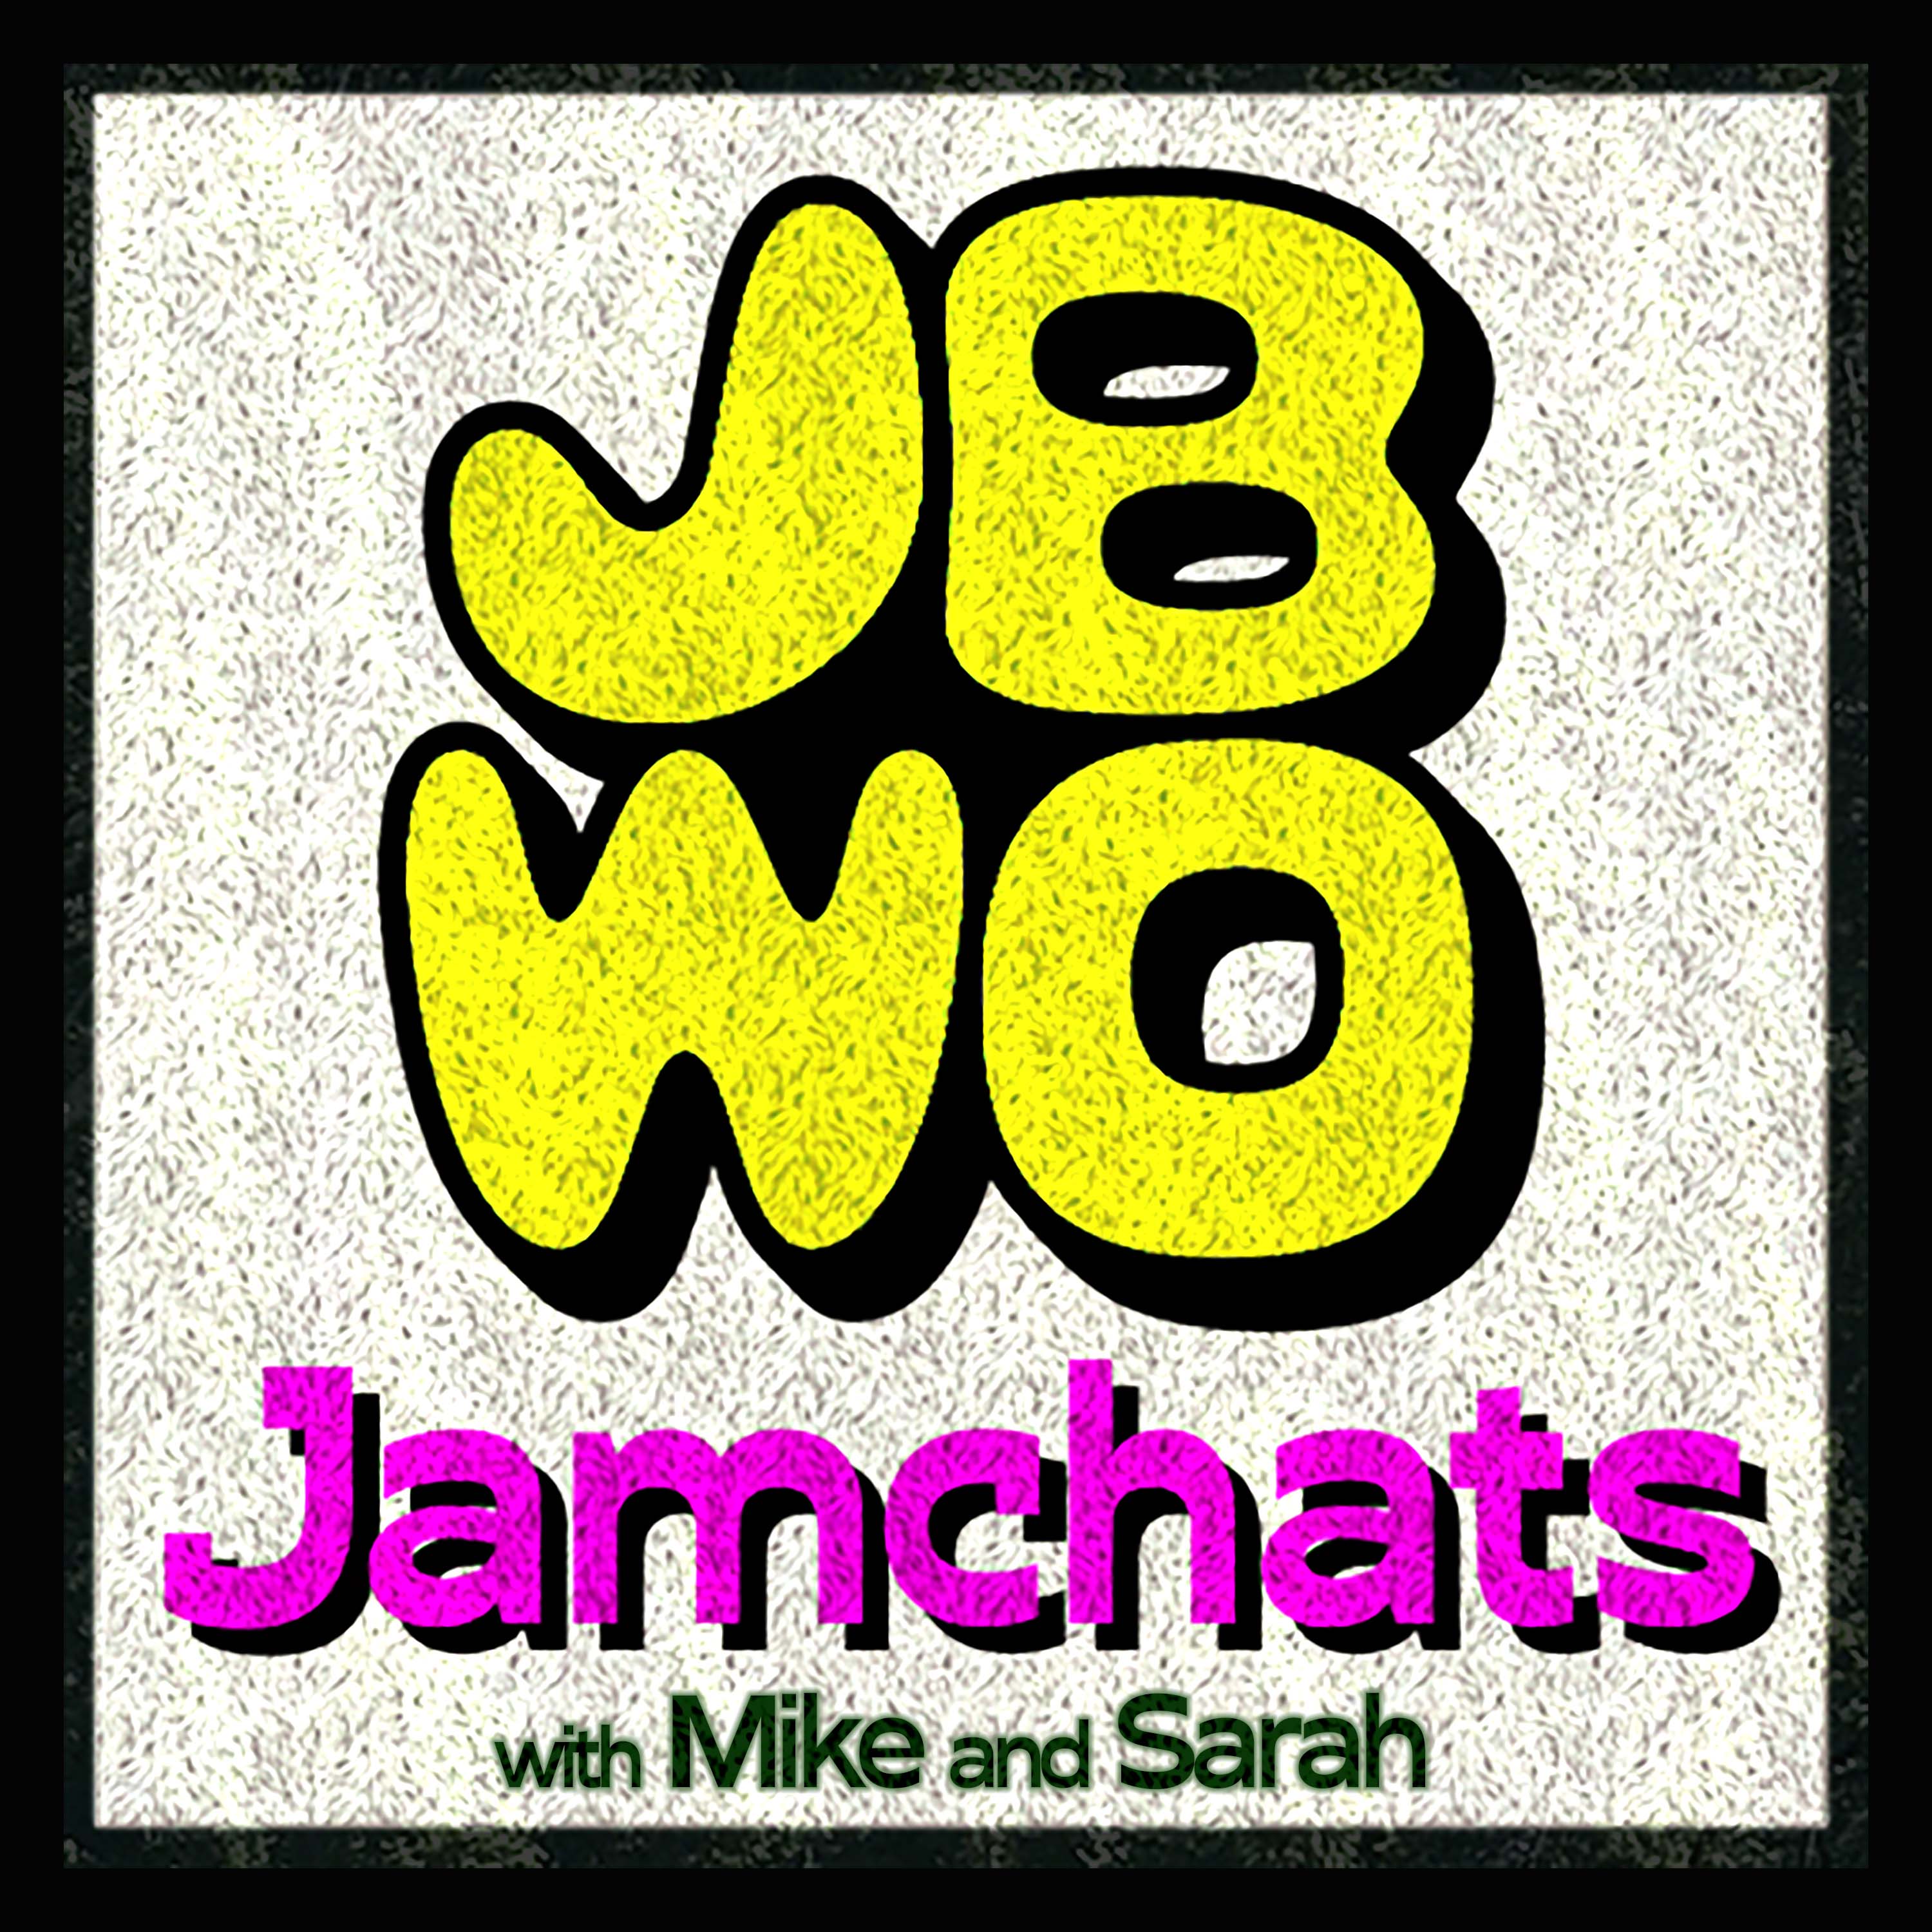 Jamchats with Jamband Workout